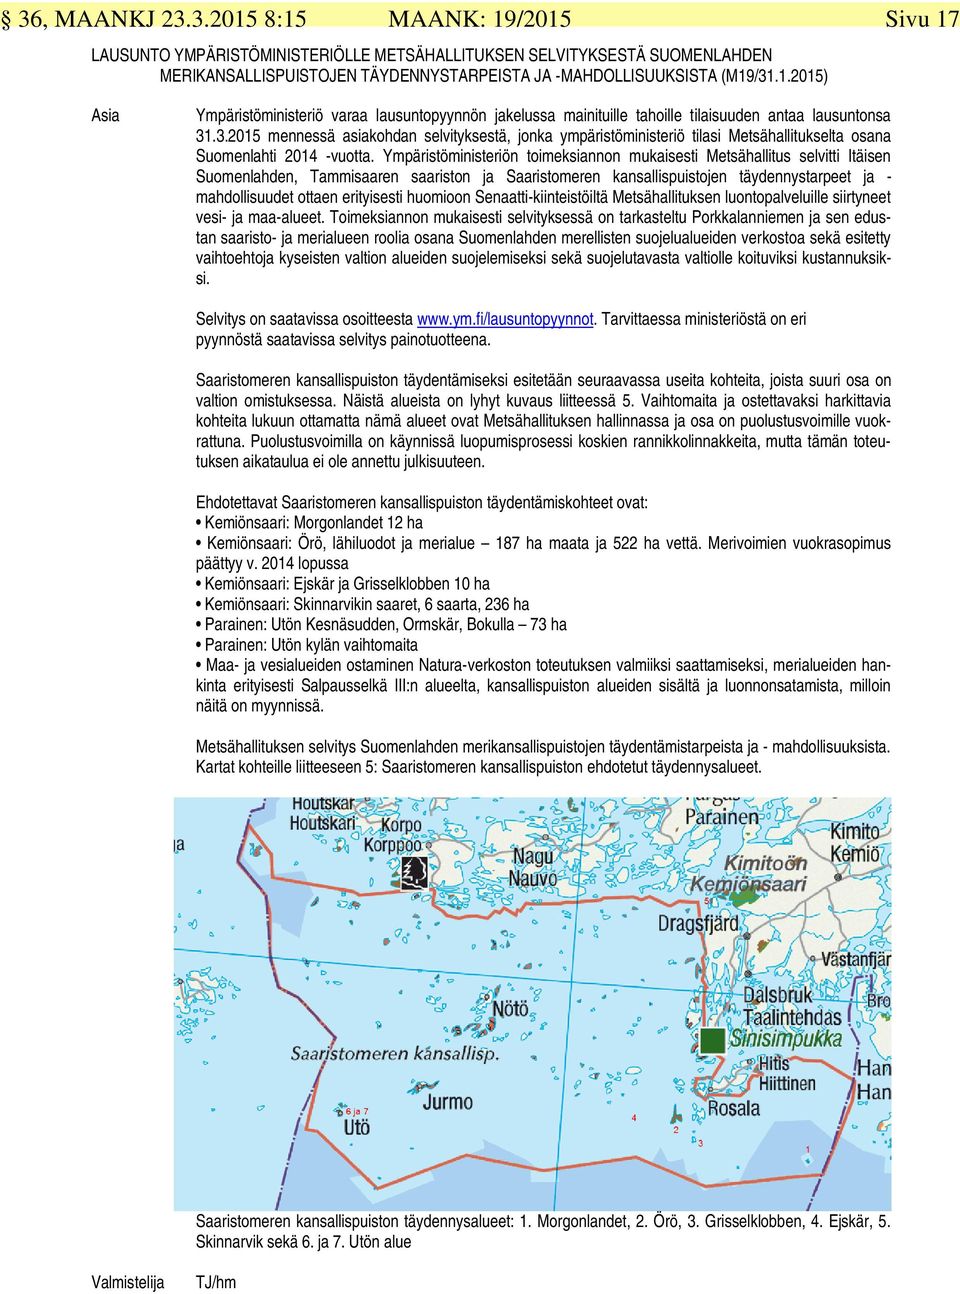 Ympäristöministeriön toimeksiannon mukaisesti Metsähallitus selvitti Itäisen Suomenlahden, Tammisaaren saariston ja Saaristomeren kansallispuistojen täydennystarpeet ja - mahdollisuudet ottaen